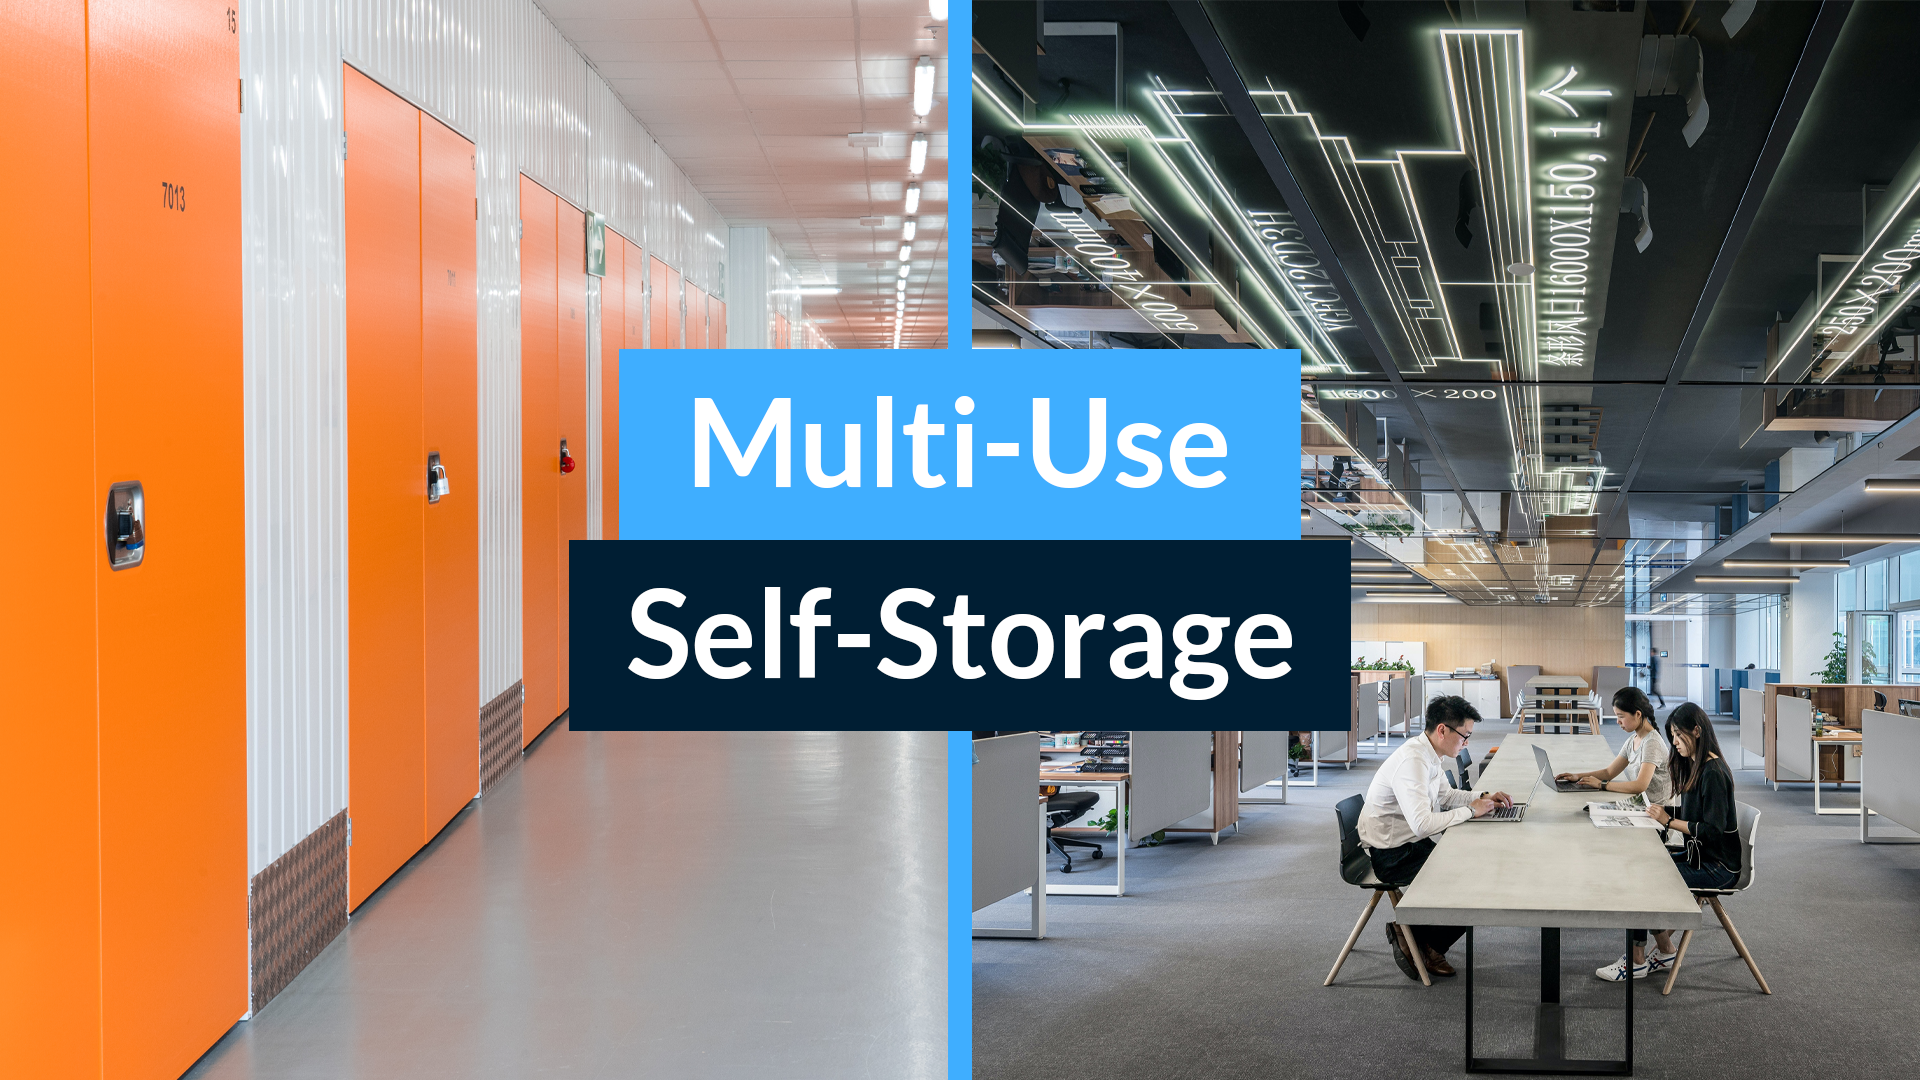 Wird die Multi-Use Entwicklung in der Self-Storage Branche ihr goldener Schatz sein?